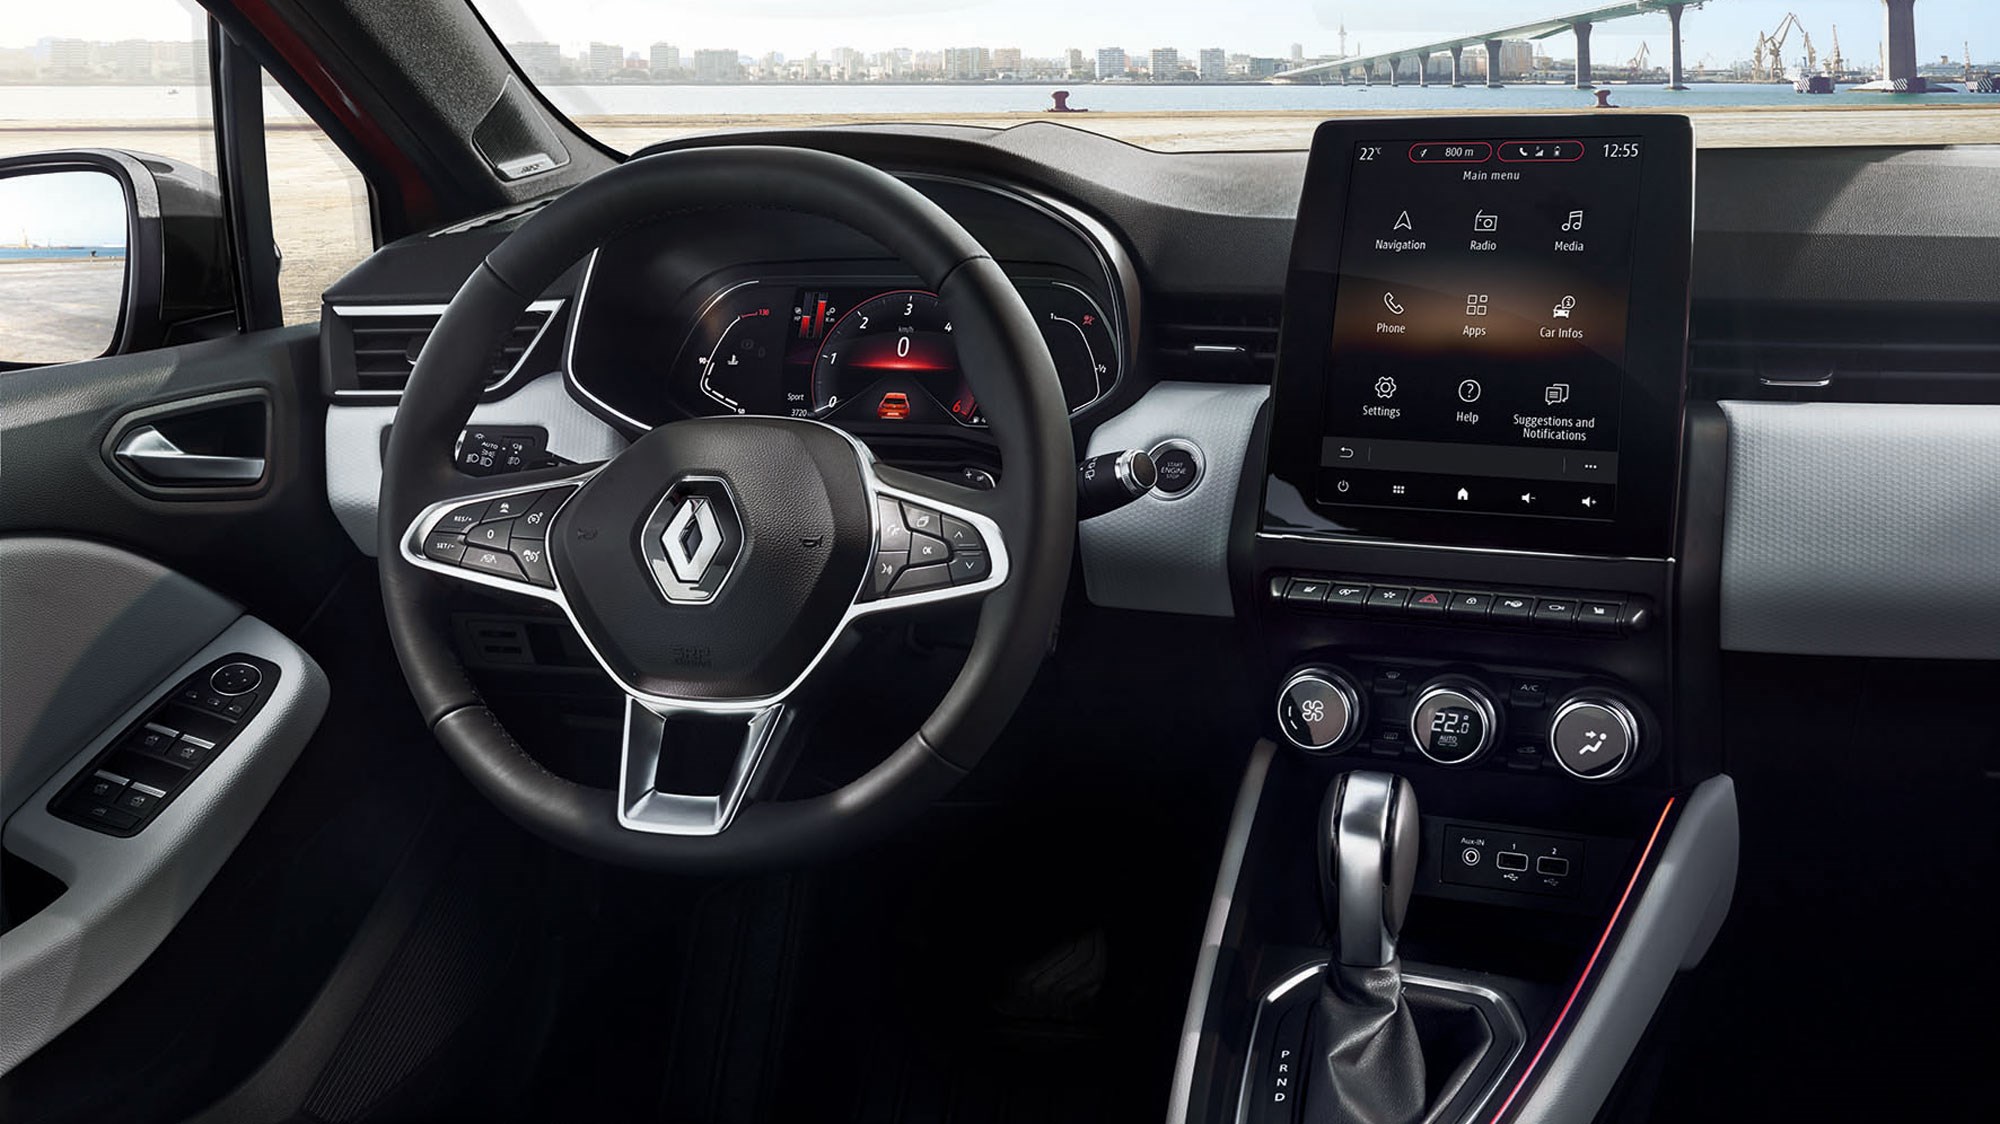 New Renault Clio E-Tech unveiled | CAR Magazine